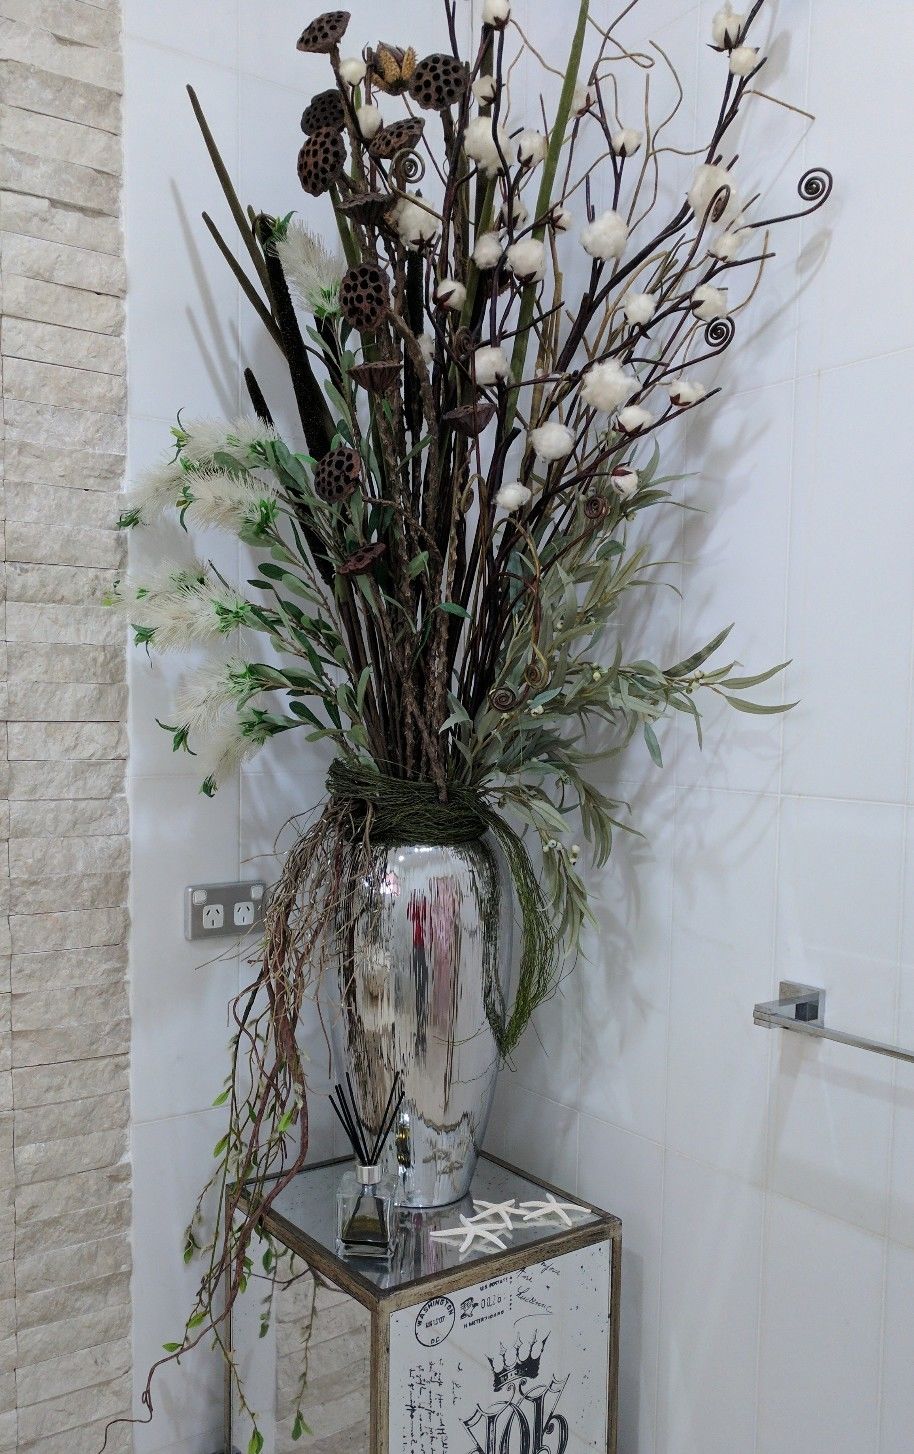 Les plus beaux vases à fleurs que nous avons trouvé sur eBay !  